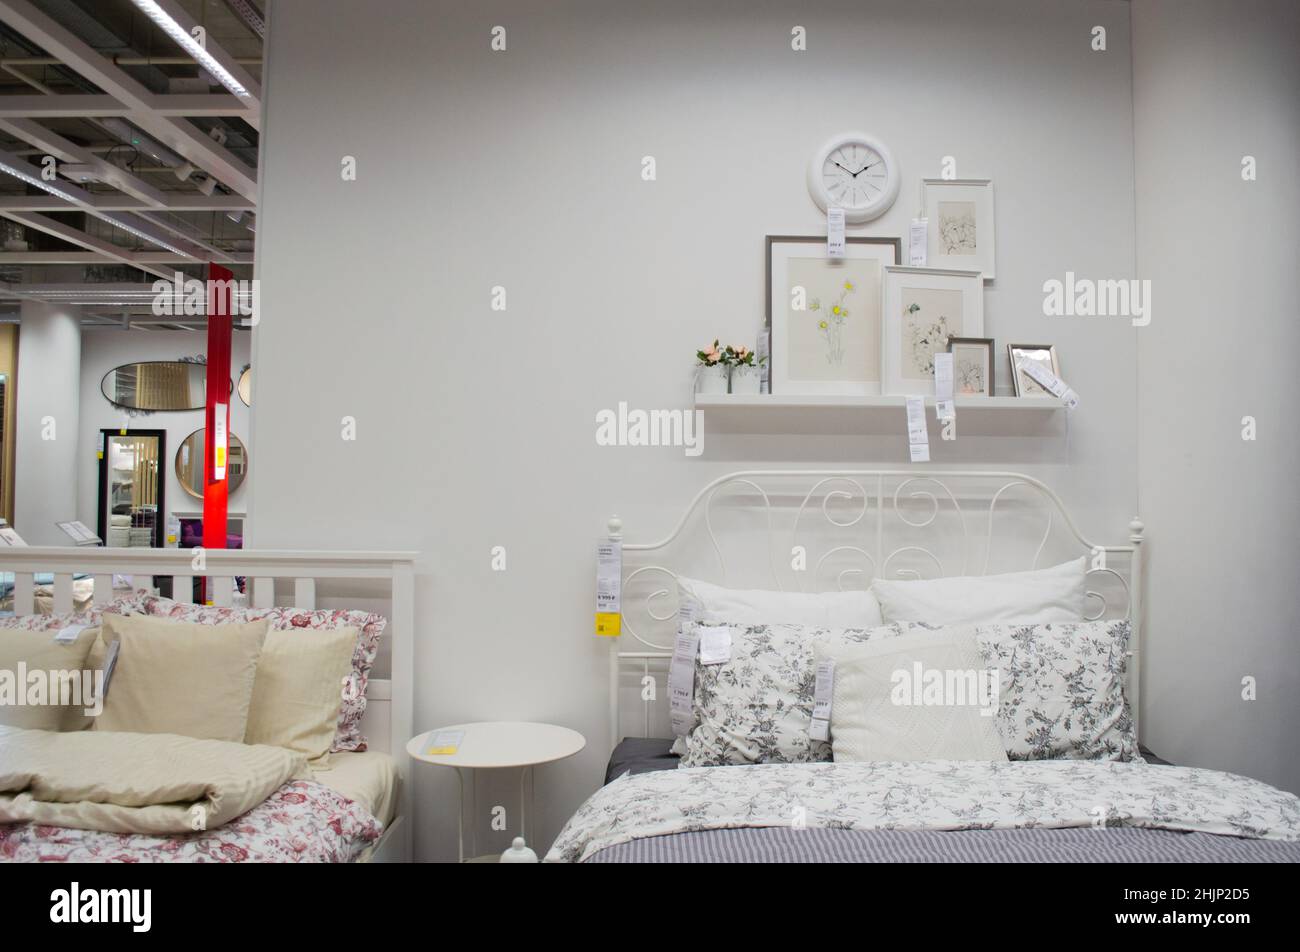 Moscú, Rusia, septiembre de 2019: Interior del dormitorio de la tienda IKEA:  Cama de color blanco, ropa de cama, marcos de fotos y reloj de pared.  Tienda de muebles Fotografía de stock -